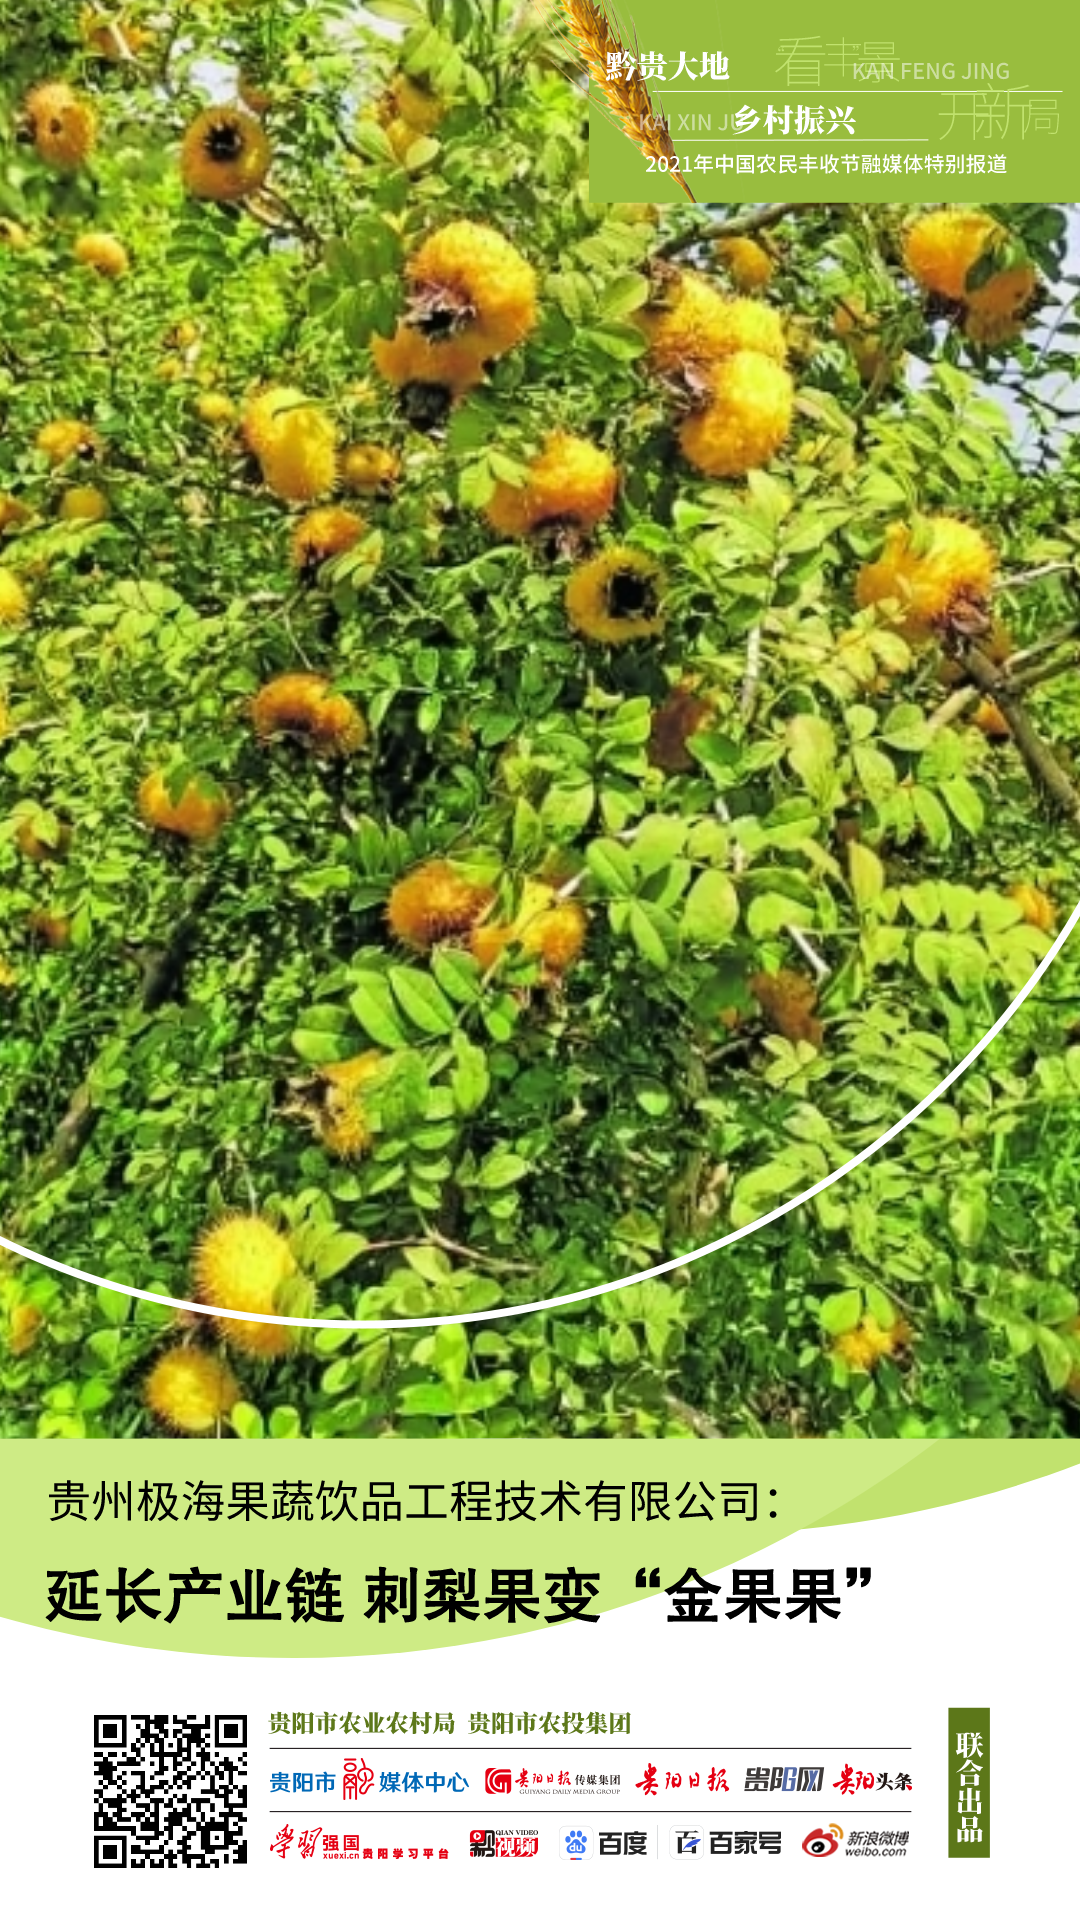 贵州极海果蔬饮品工程技术有限公司：延长产业链 刺梨果变“金果果”